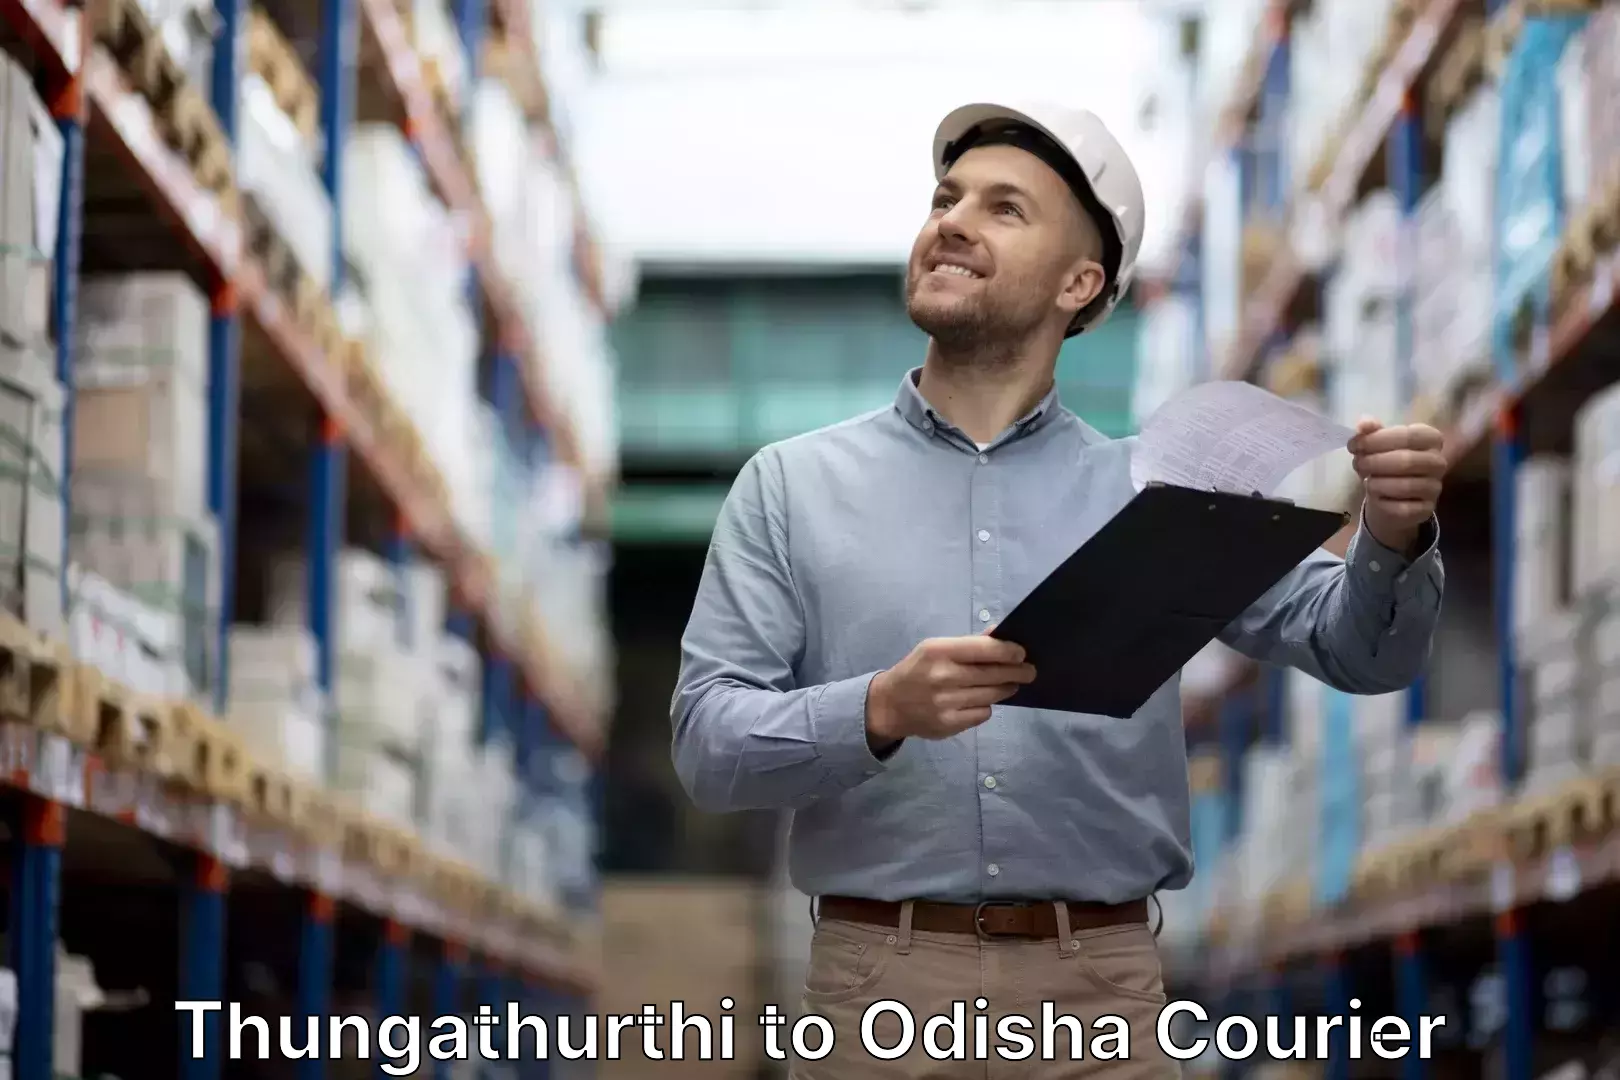 Luggage shipment tracking Thungathurthi to Muniguda